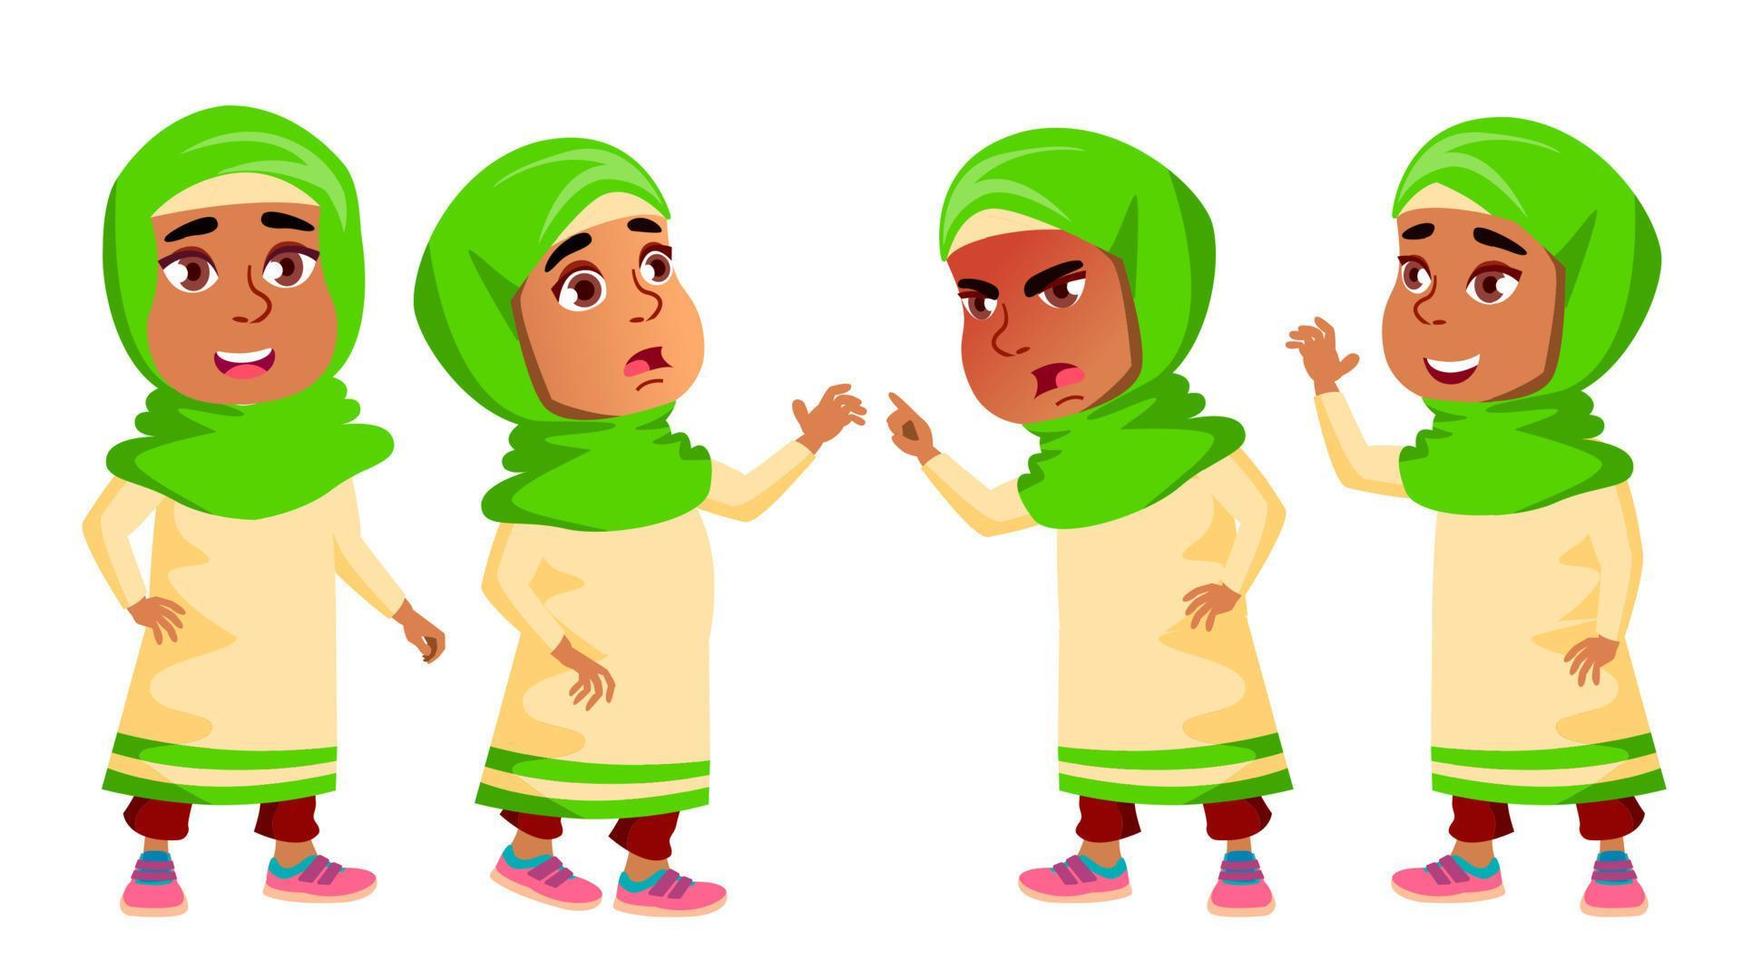 arabisches, muslimisches mädchen kindergartenkind stellt vektor auf. glücklicher schöner kindercharakter. für Werbung, Booklet, Plakatgestaltung. isolierte karikaturillustration